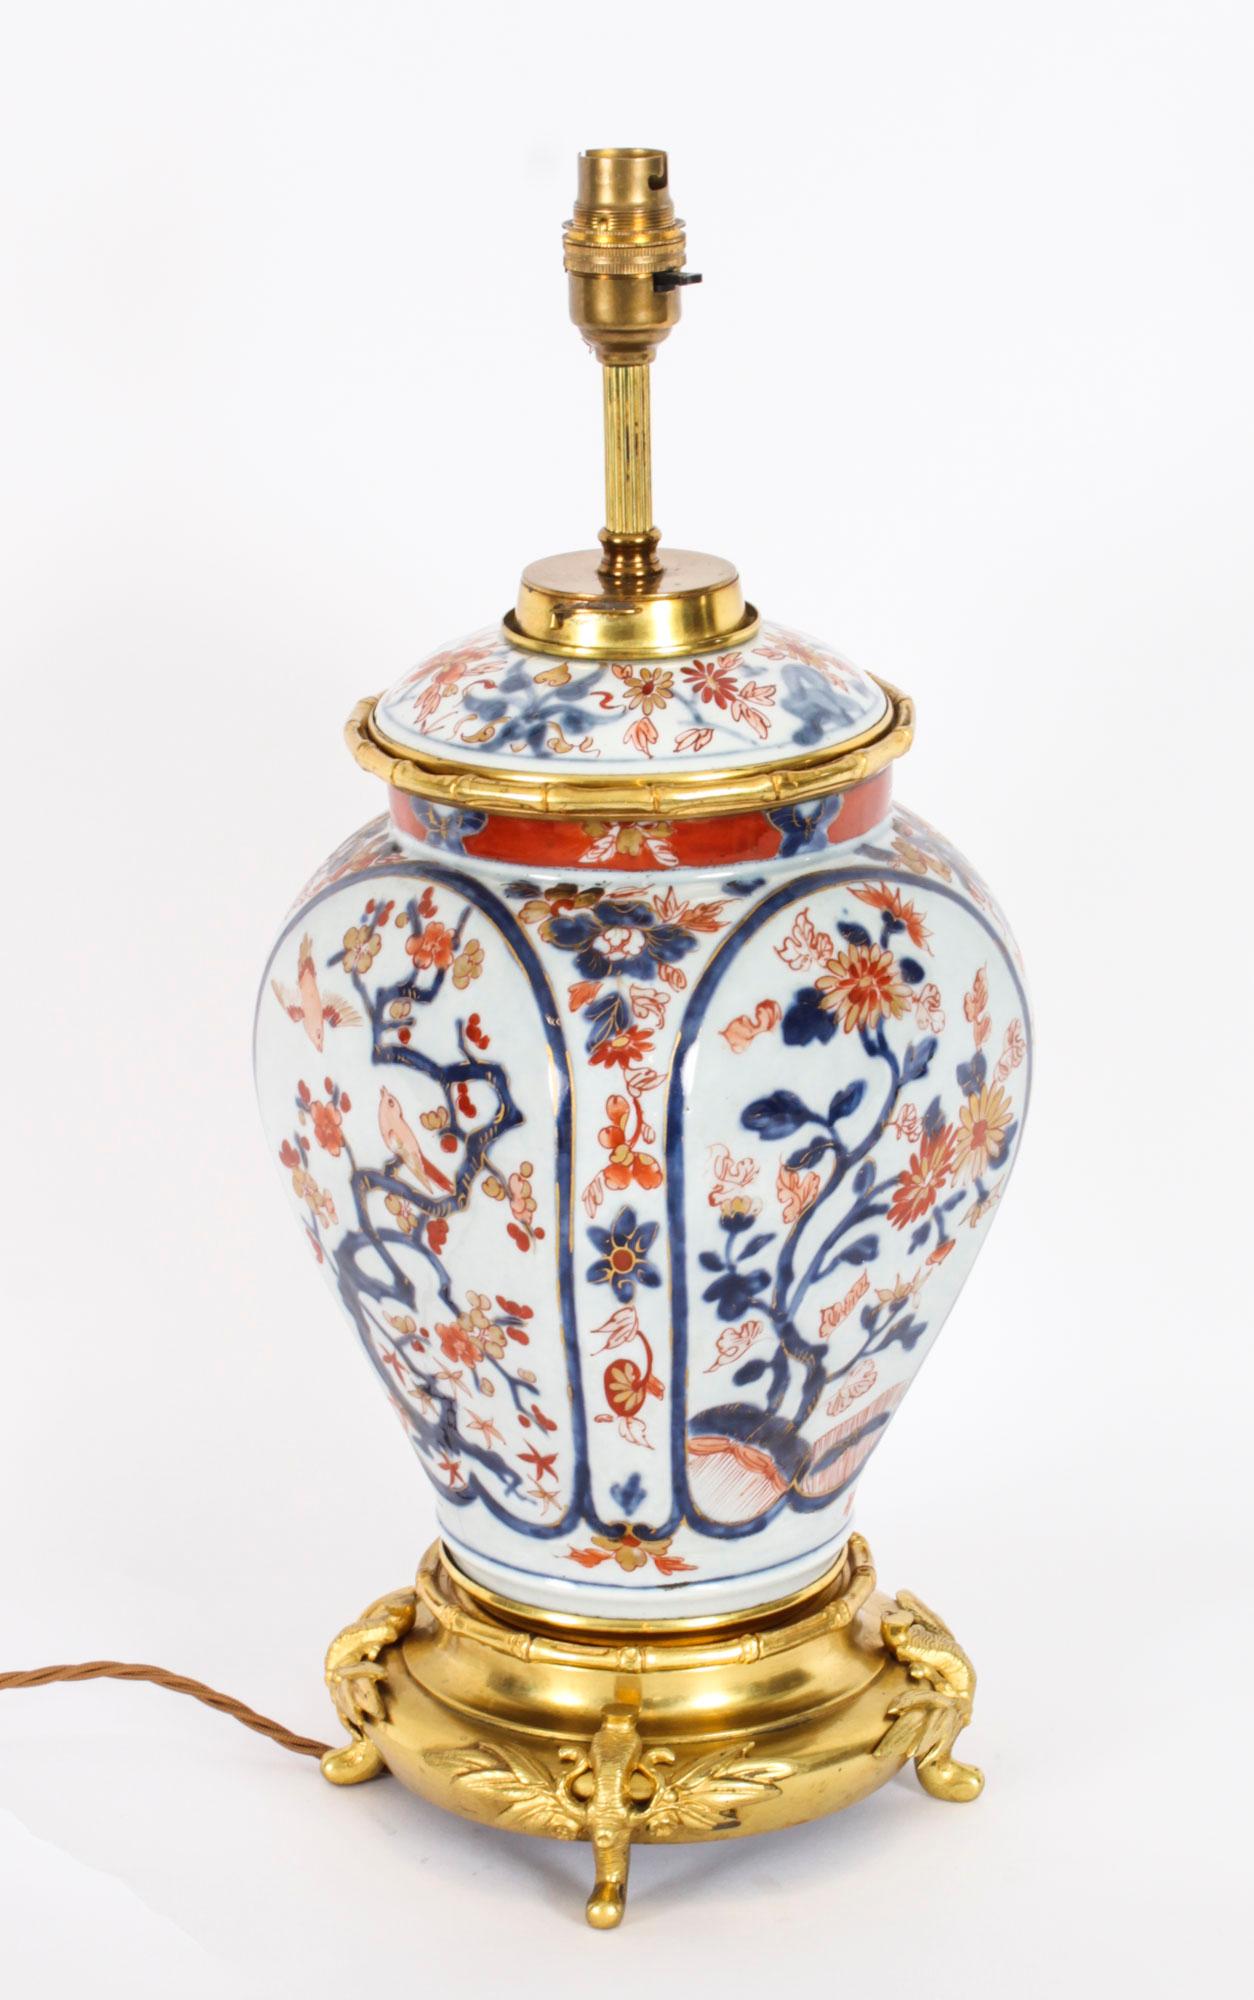 Voici une superbe lampe de table japonaise décorative Imari sur pied, datant d'environ 1840.
 
La lampe a une forme bulbeuse et présente une décoration japonaise dans la gamme de couleurs traditionnelle Imari (bleu, orange et rouge), abondamment